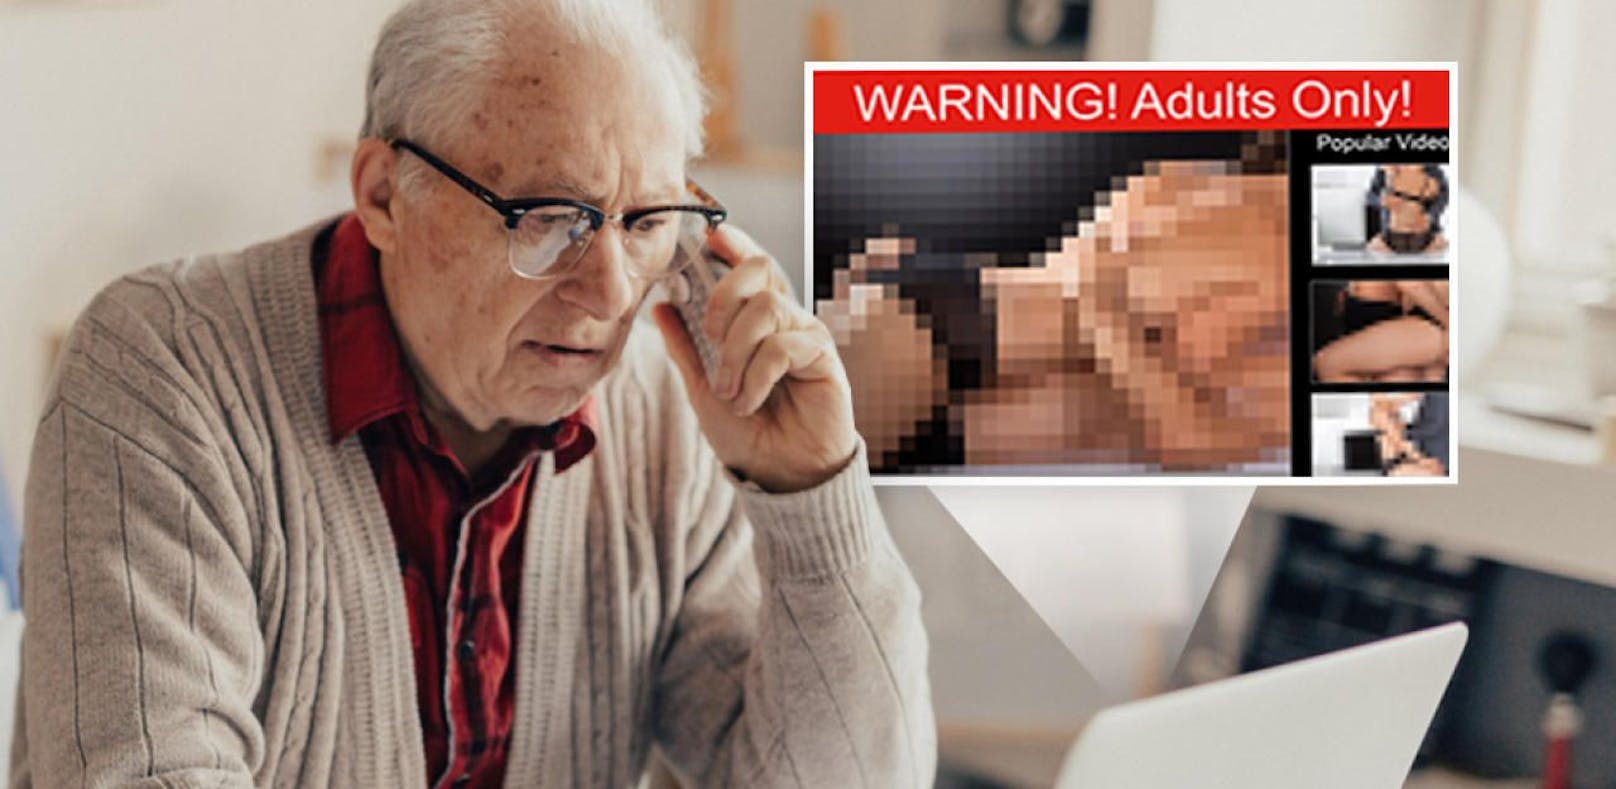 Der Pensionist wurde mit einem Sex-Video erpresst